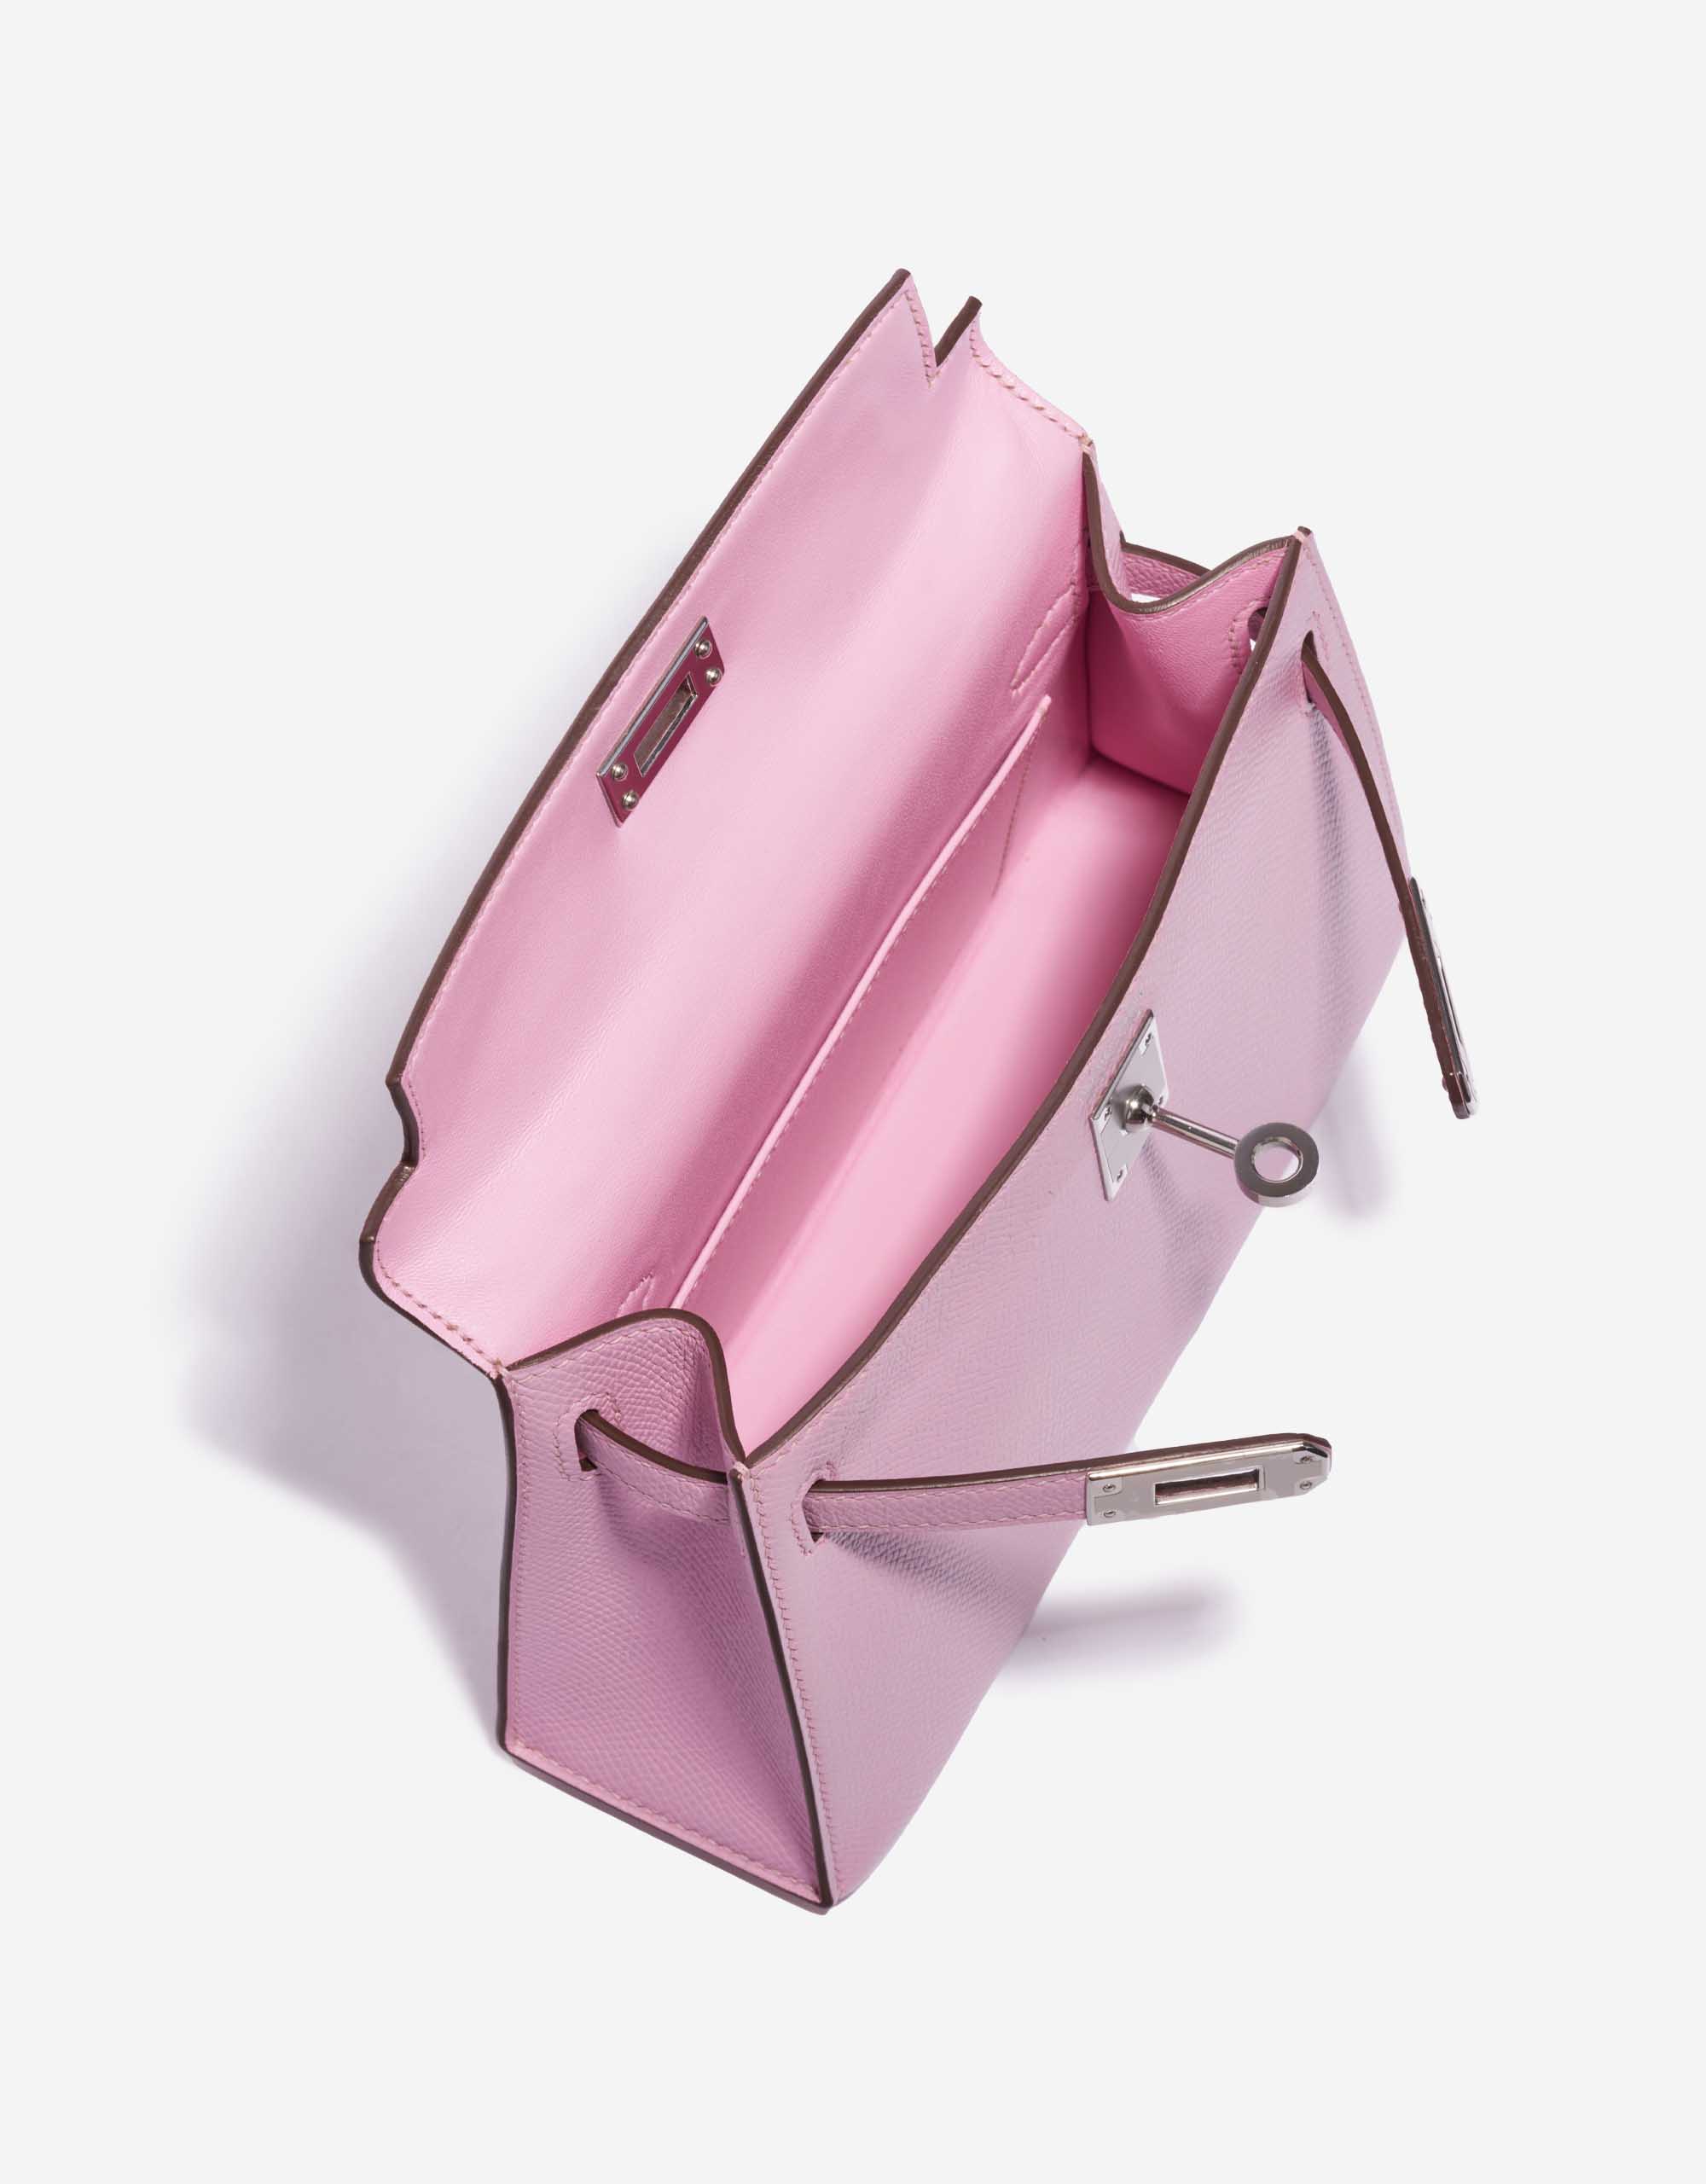 Pre-owned Hermès Tasche Kelly Mini Epsom Mauve Sylvestre Pink Inside | Verkaufen Sie Ihre Designer-Tasche auf Saclab.com